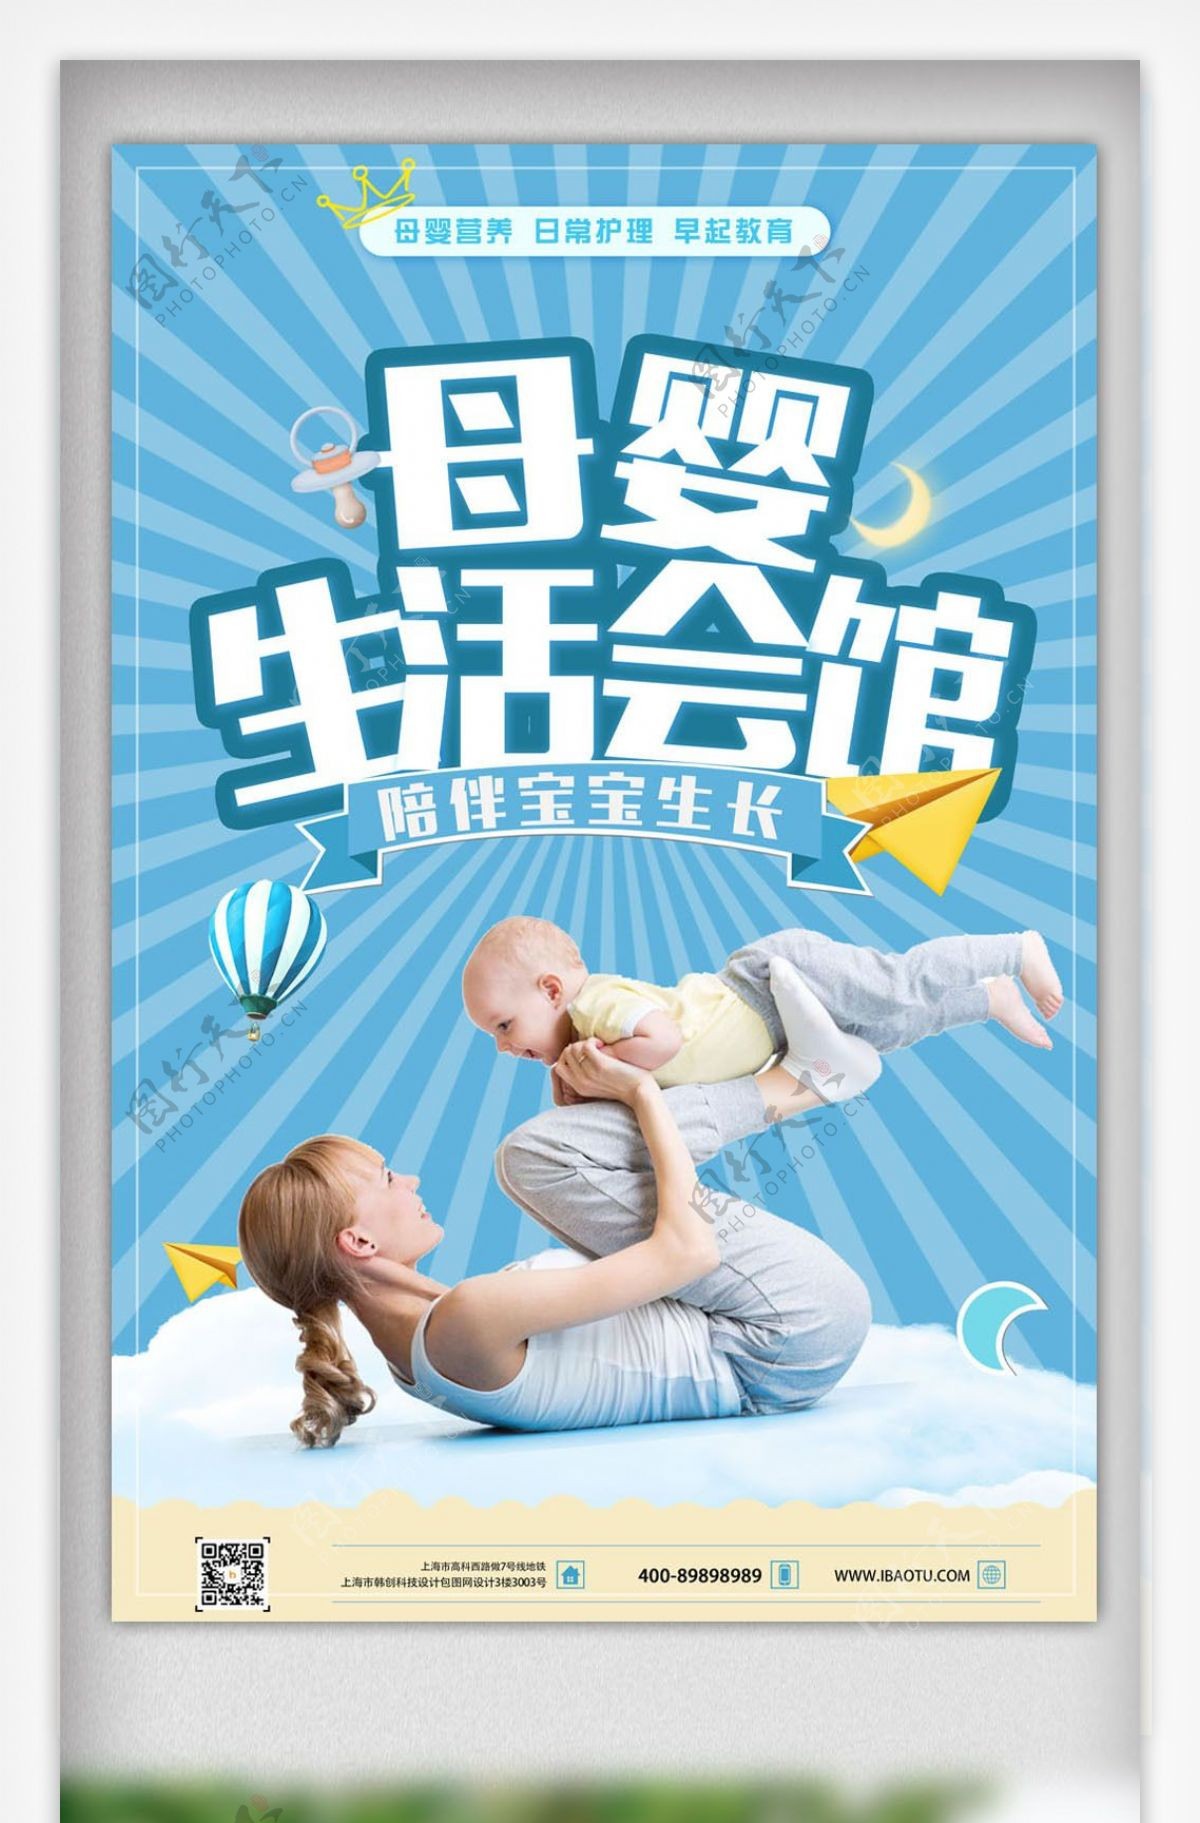 时尚母婴生活会馆宣传海报设计